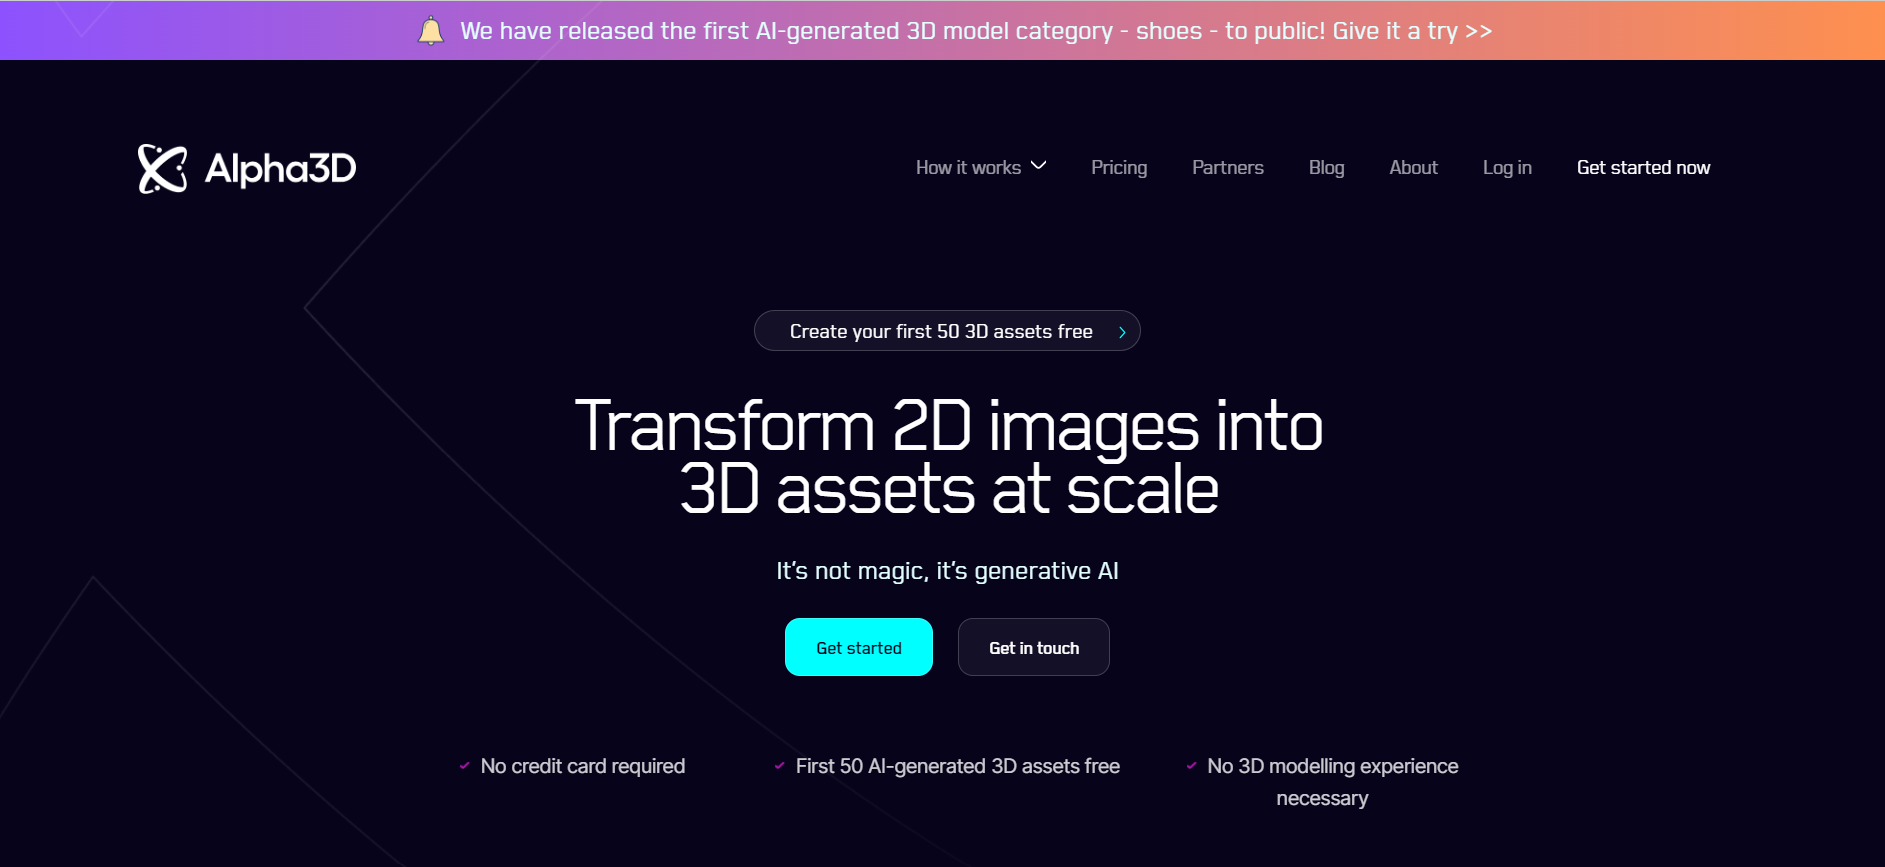 Alpha3D: Transform 3D Images into 3D